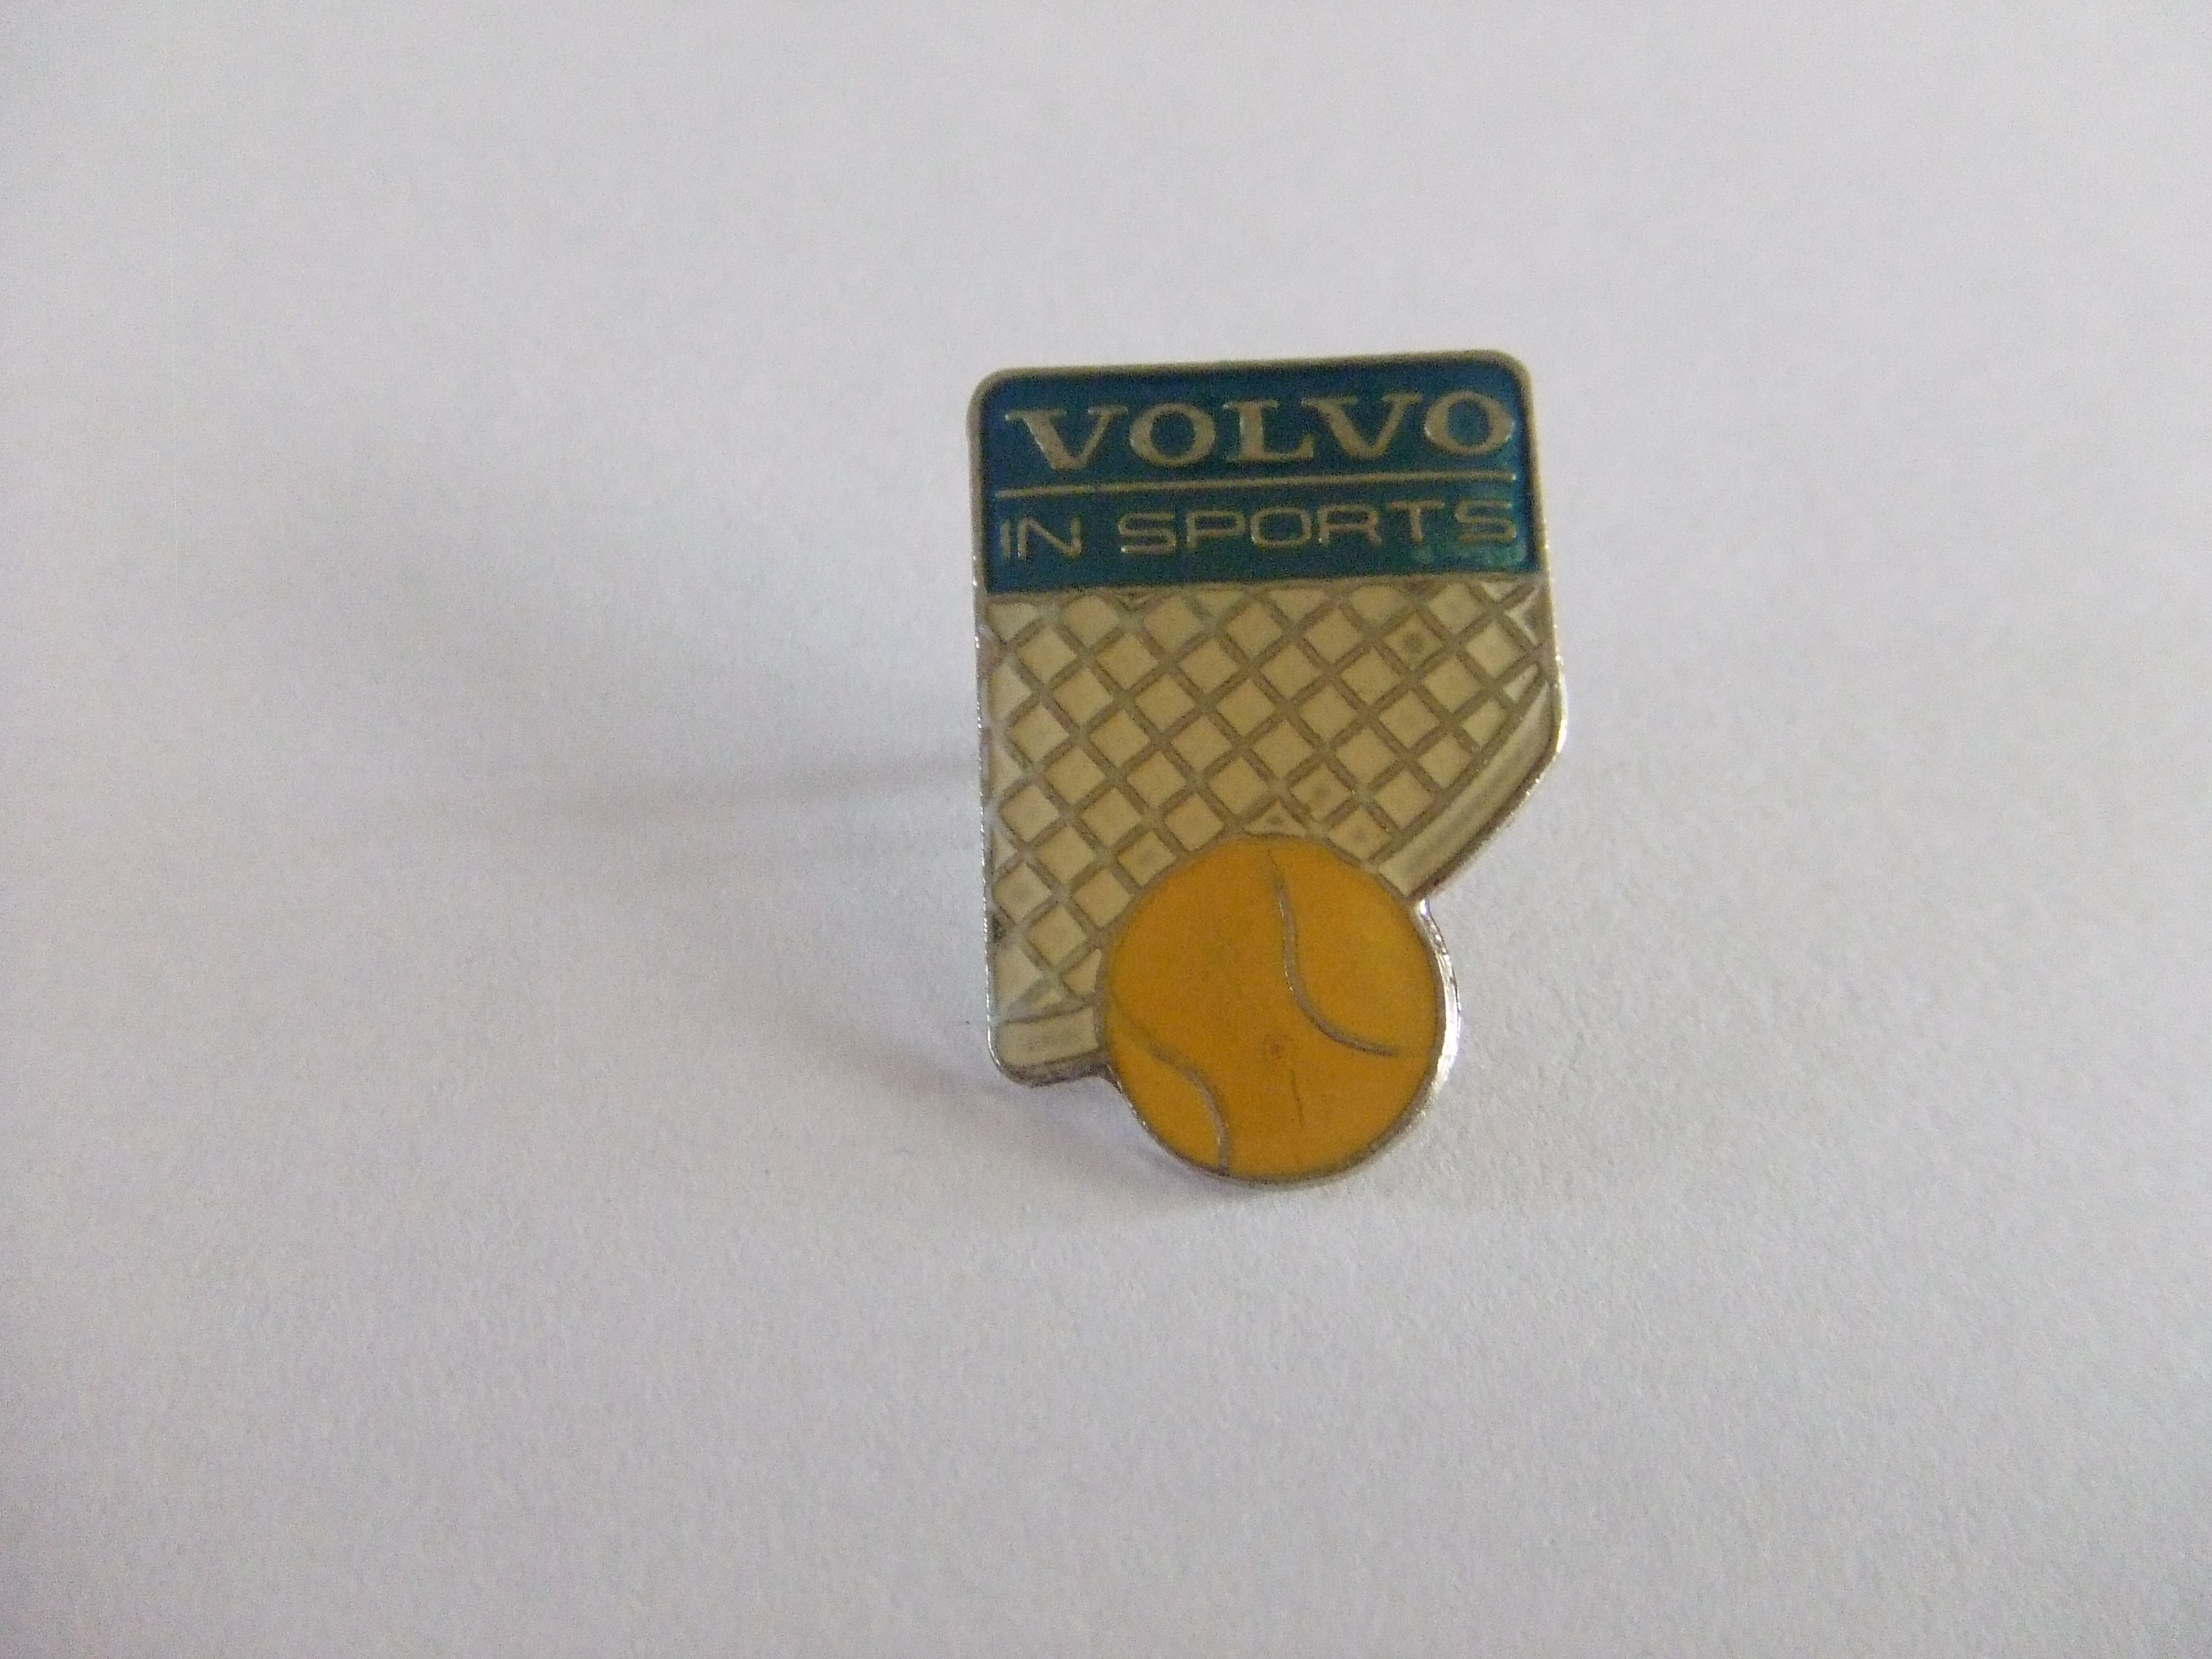 Volvo in sport sponsor